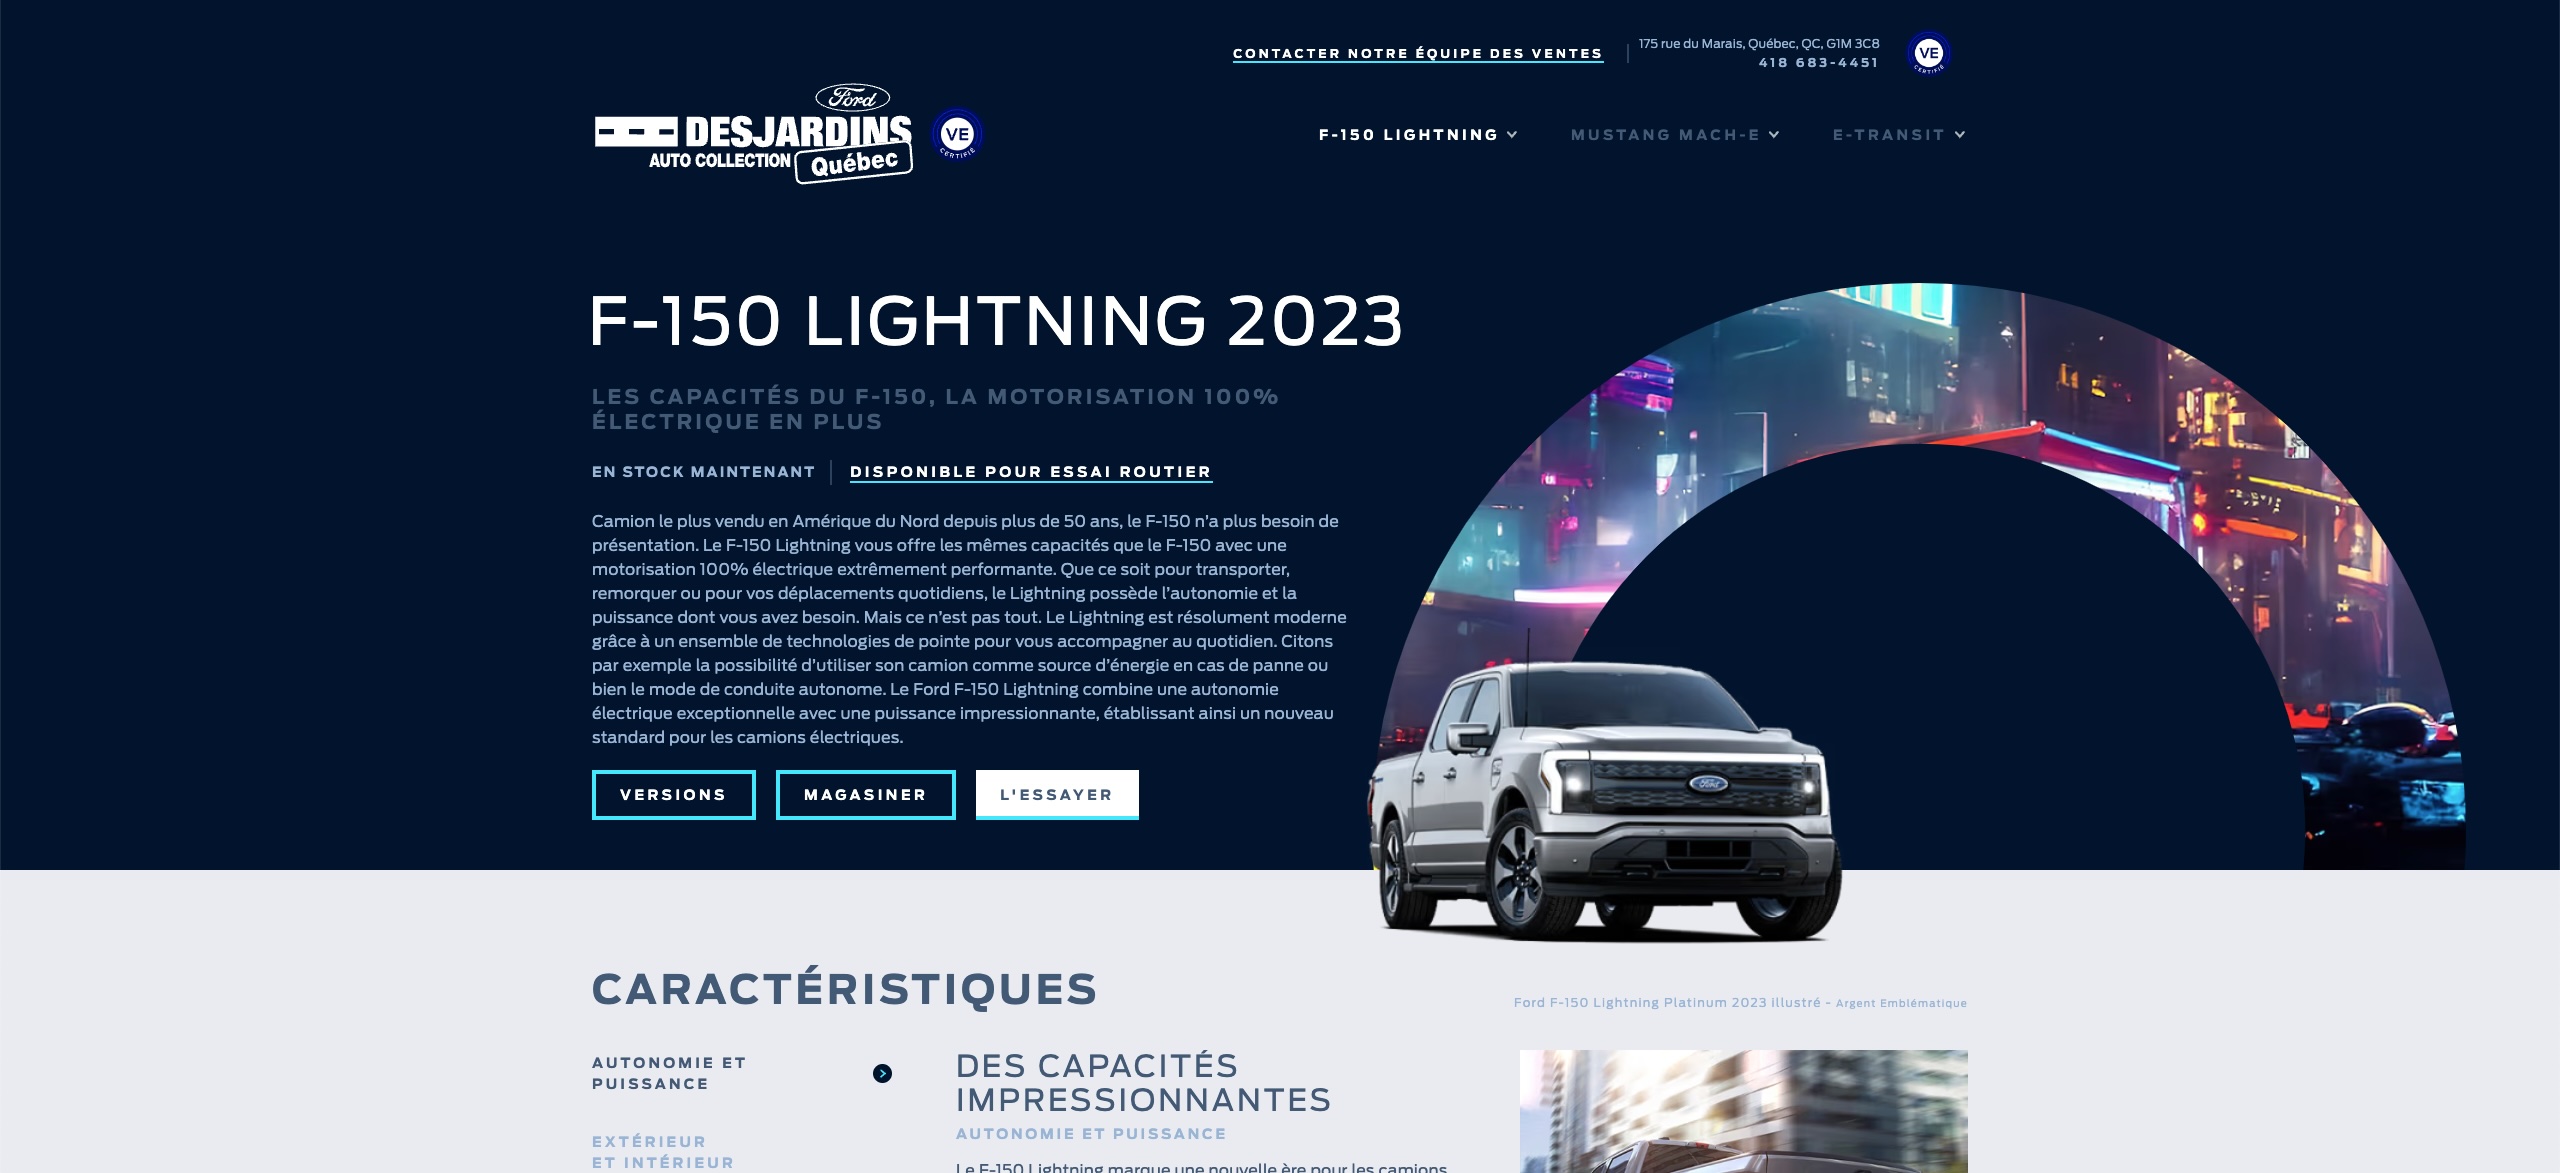 Ford F-150 Lightning 2023